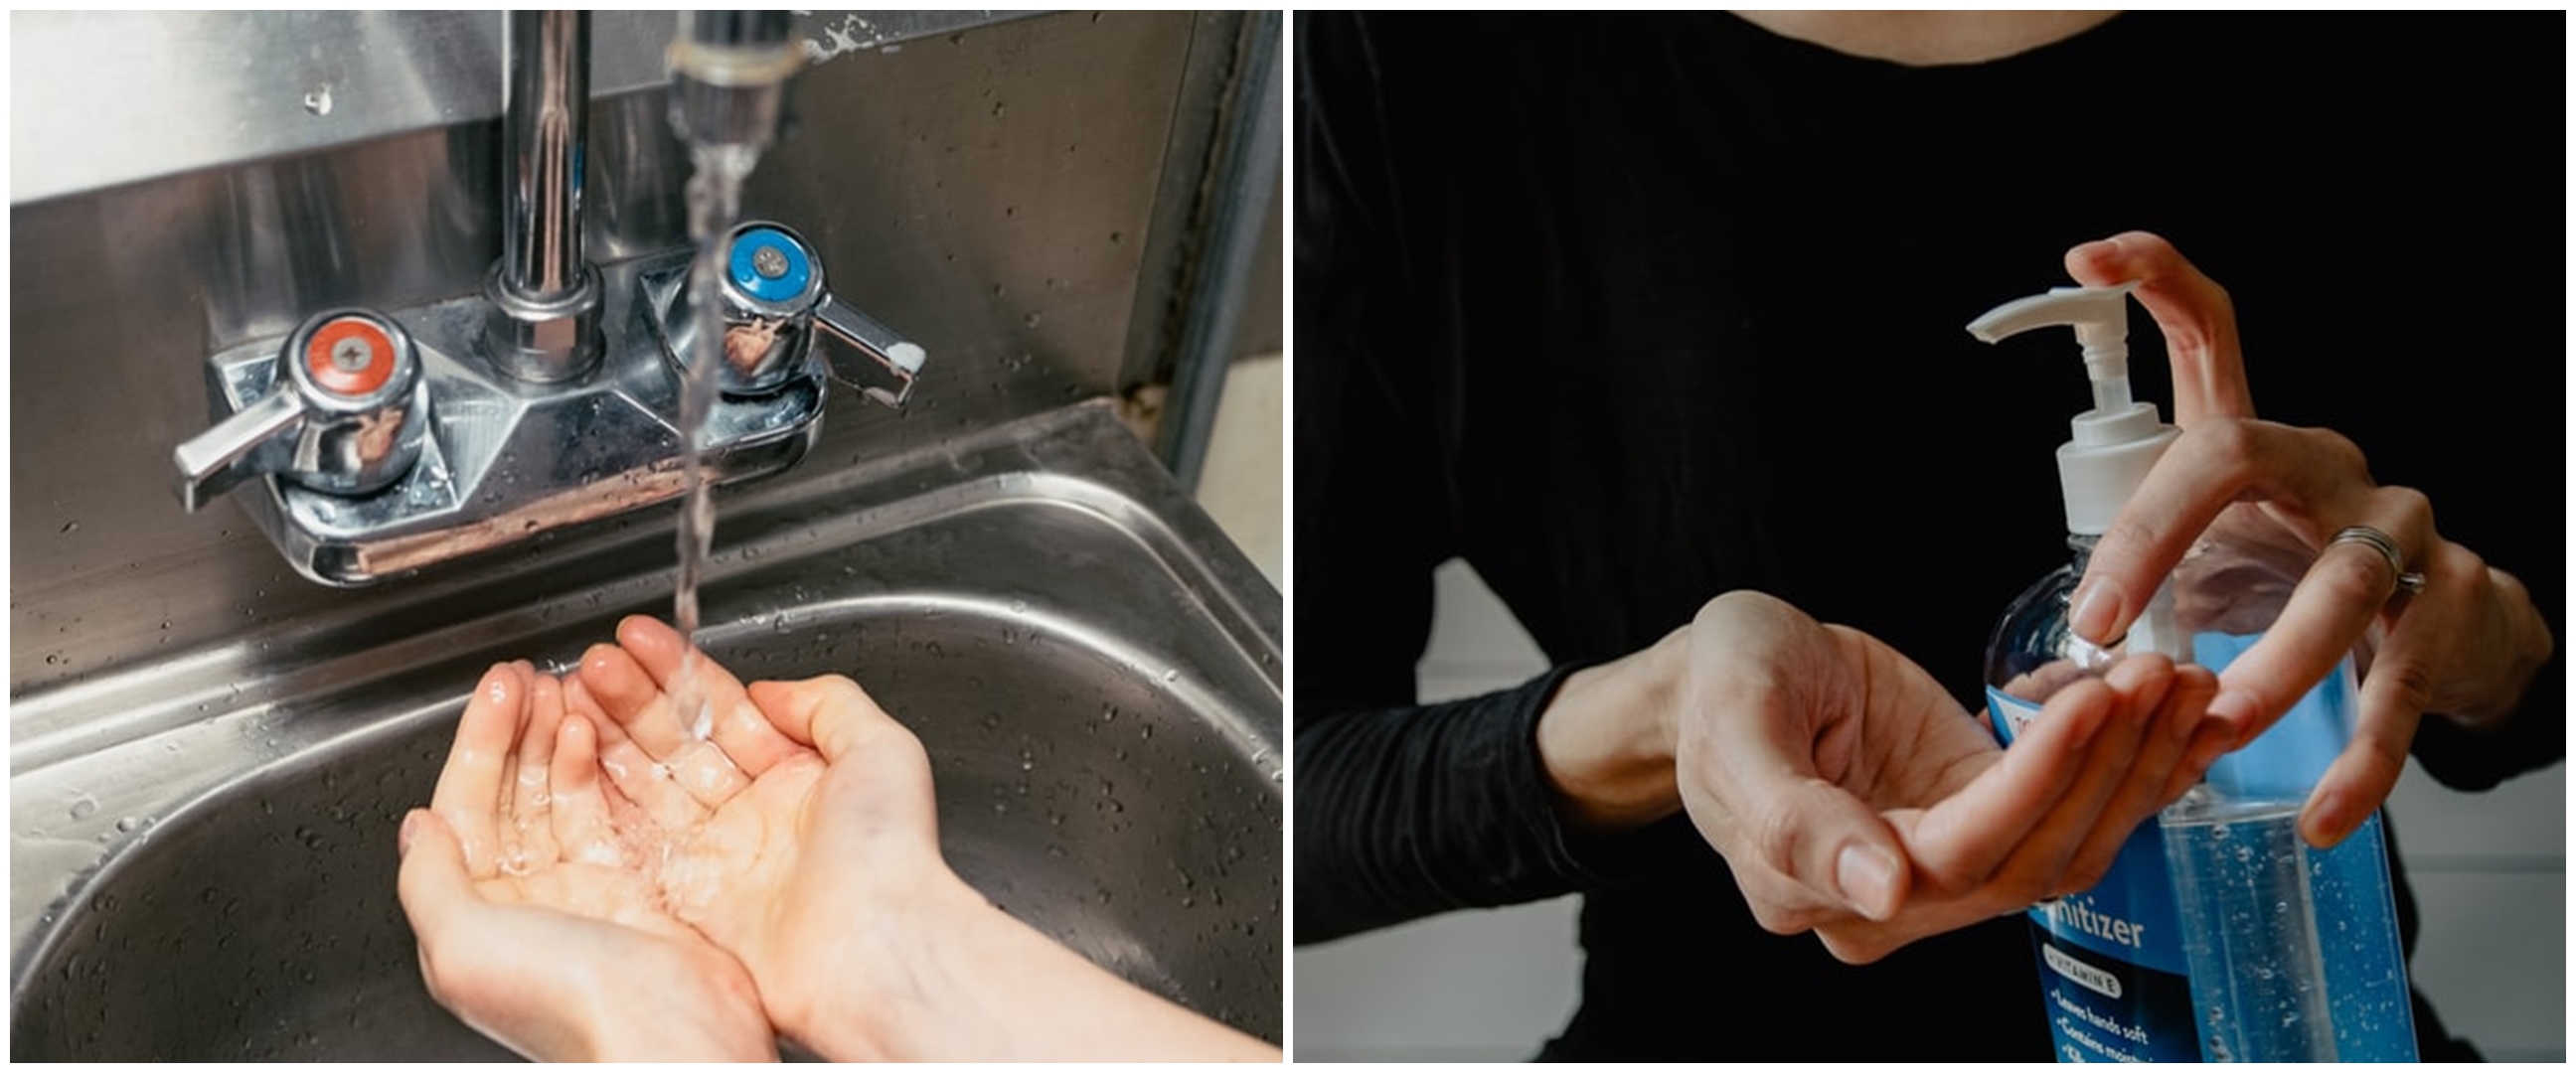 Cara bikin hand sanitizer sendiri di rumah